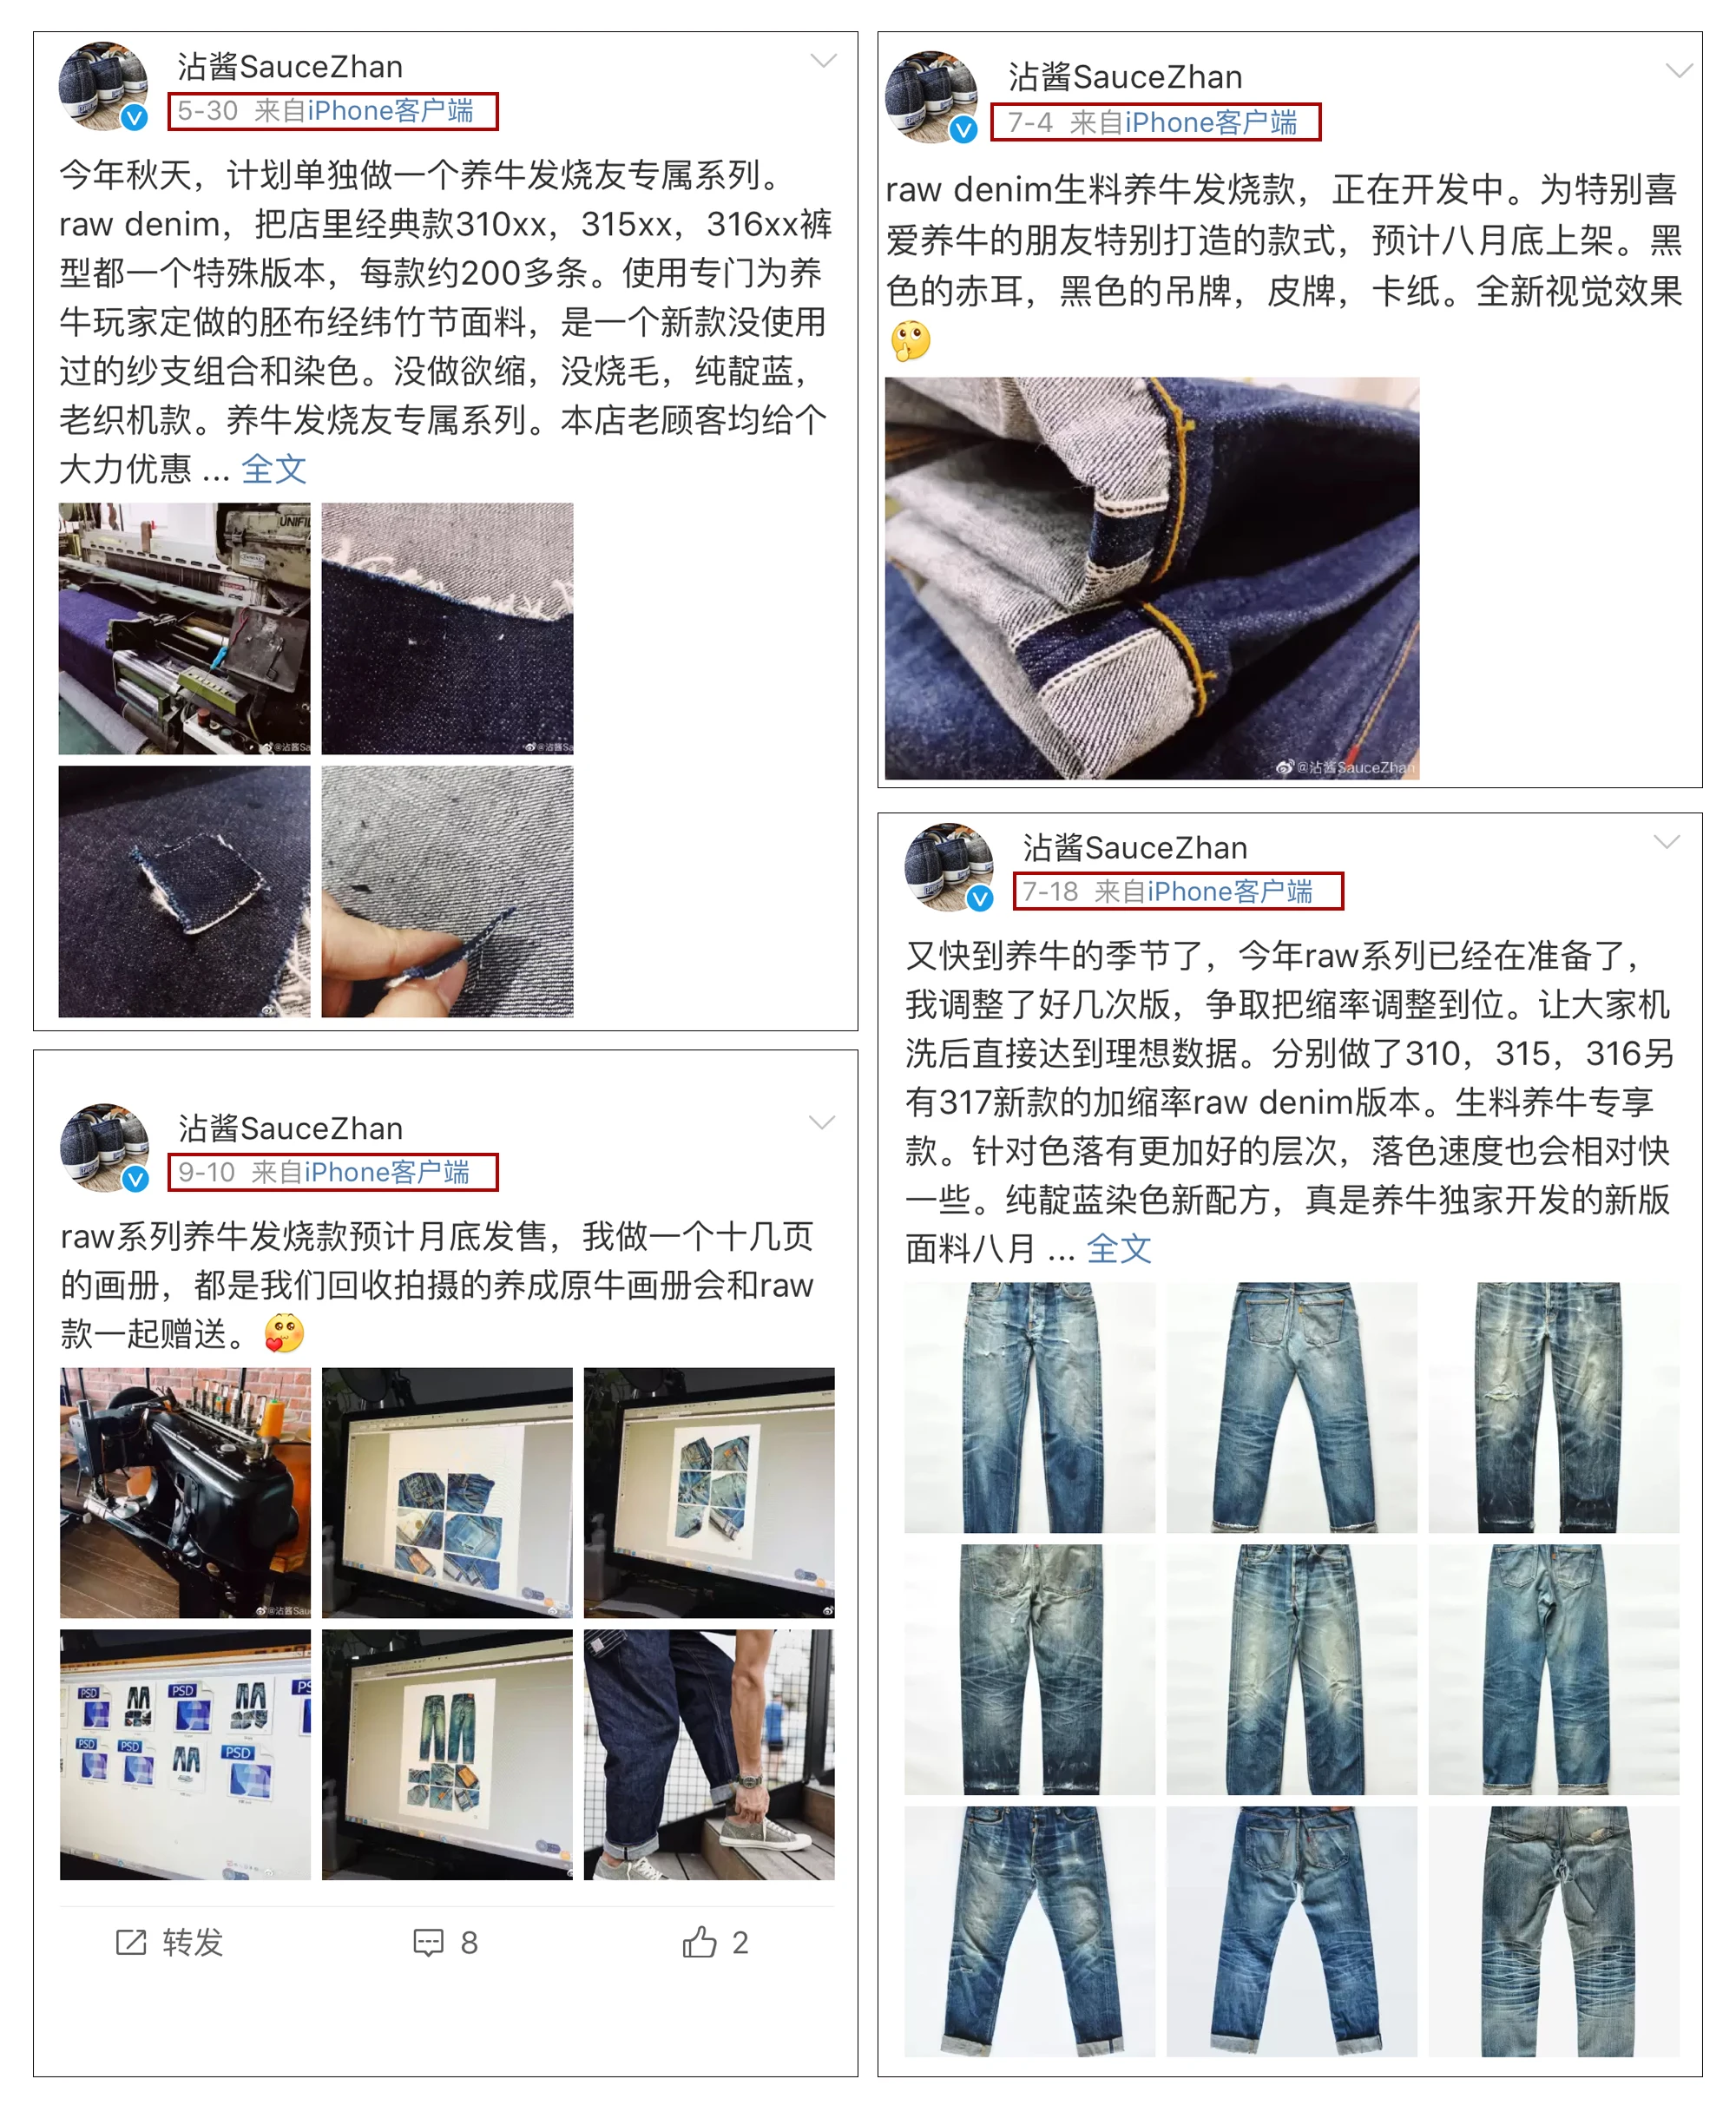 SauceZhan 316XX-RAW мужские джинсы прямые сырые джинсовые джинсы с краем джинсы несанфоризованные джинсы мужские джинсы бренд s